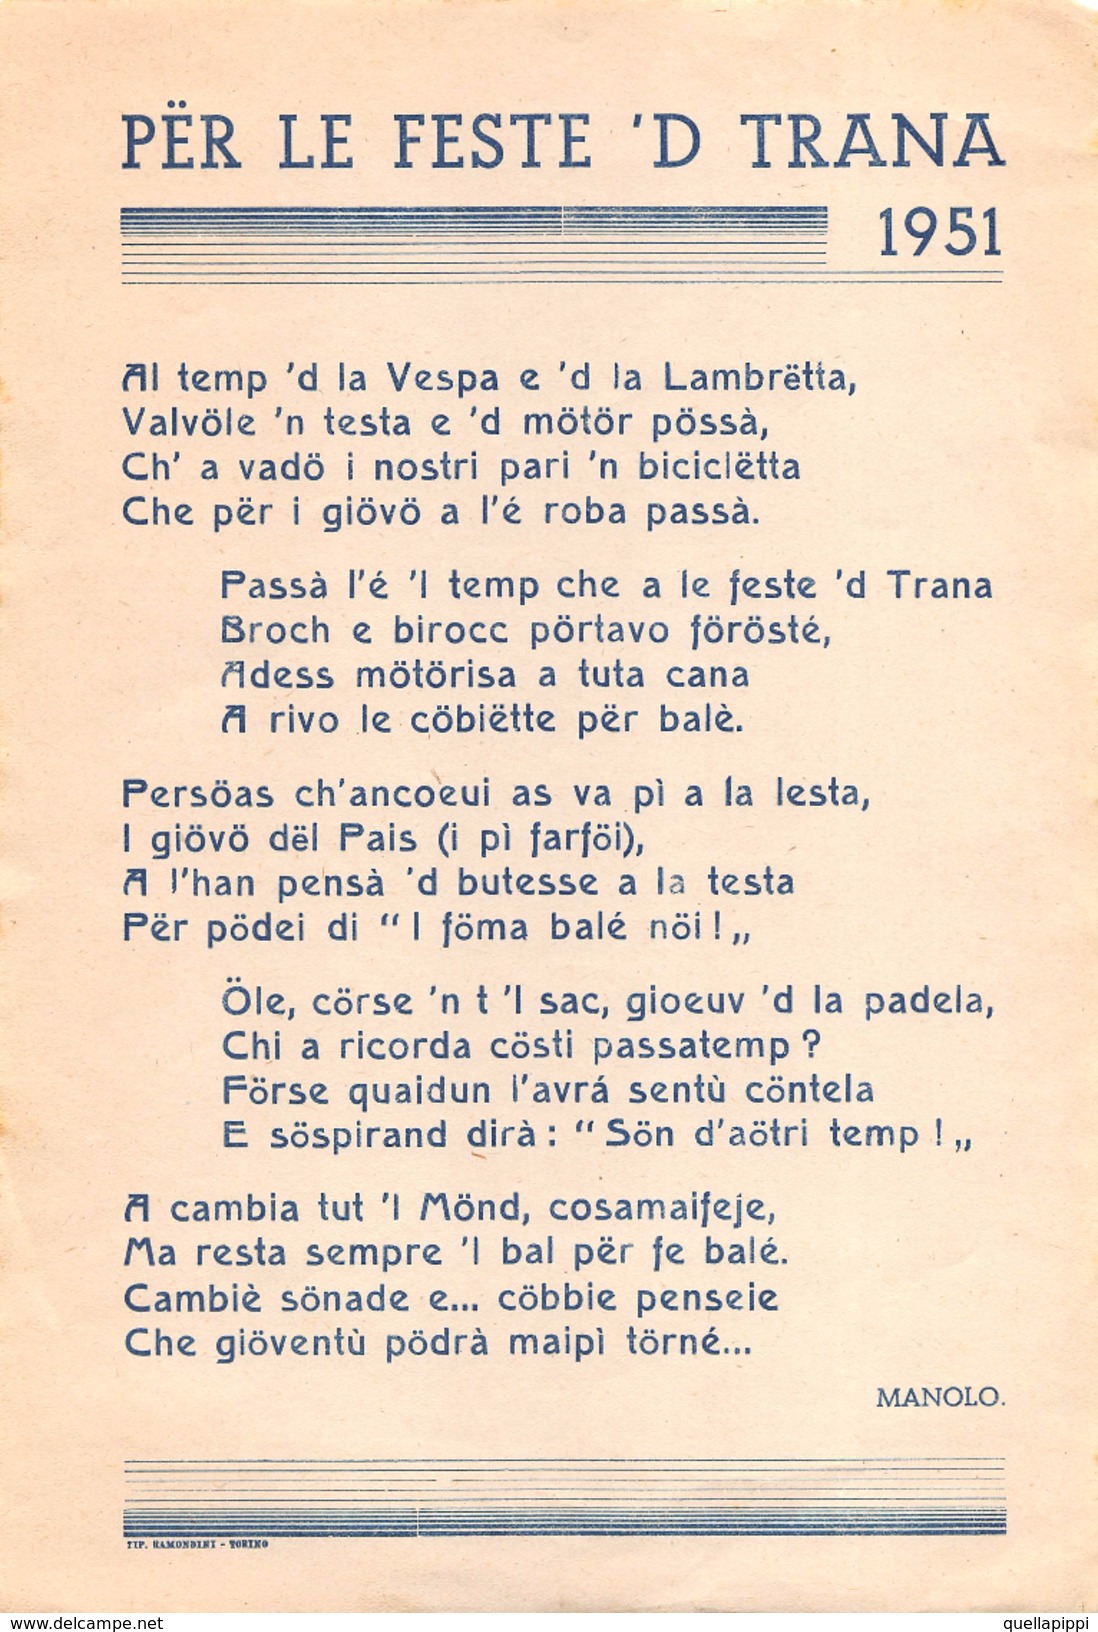 05212 "(TO) PER LE FESTE 'D TRANA 1951 - CANZONE AL TEMP 'D LA VESPA E 'D LA LAMBRETTA DI MANOLO" - Manifesti